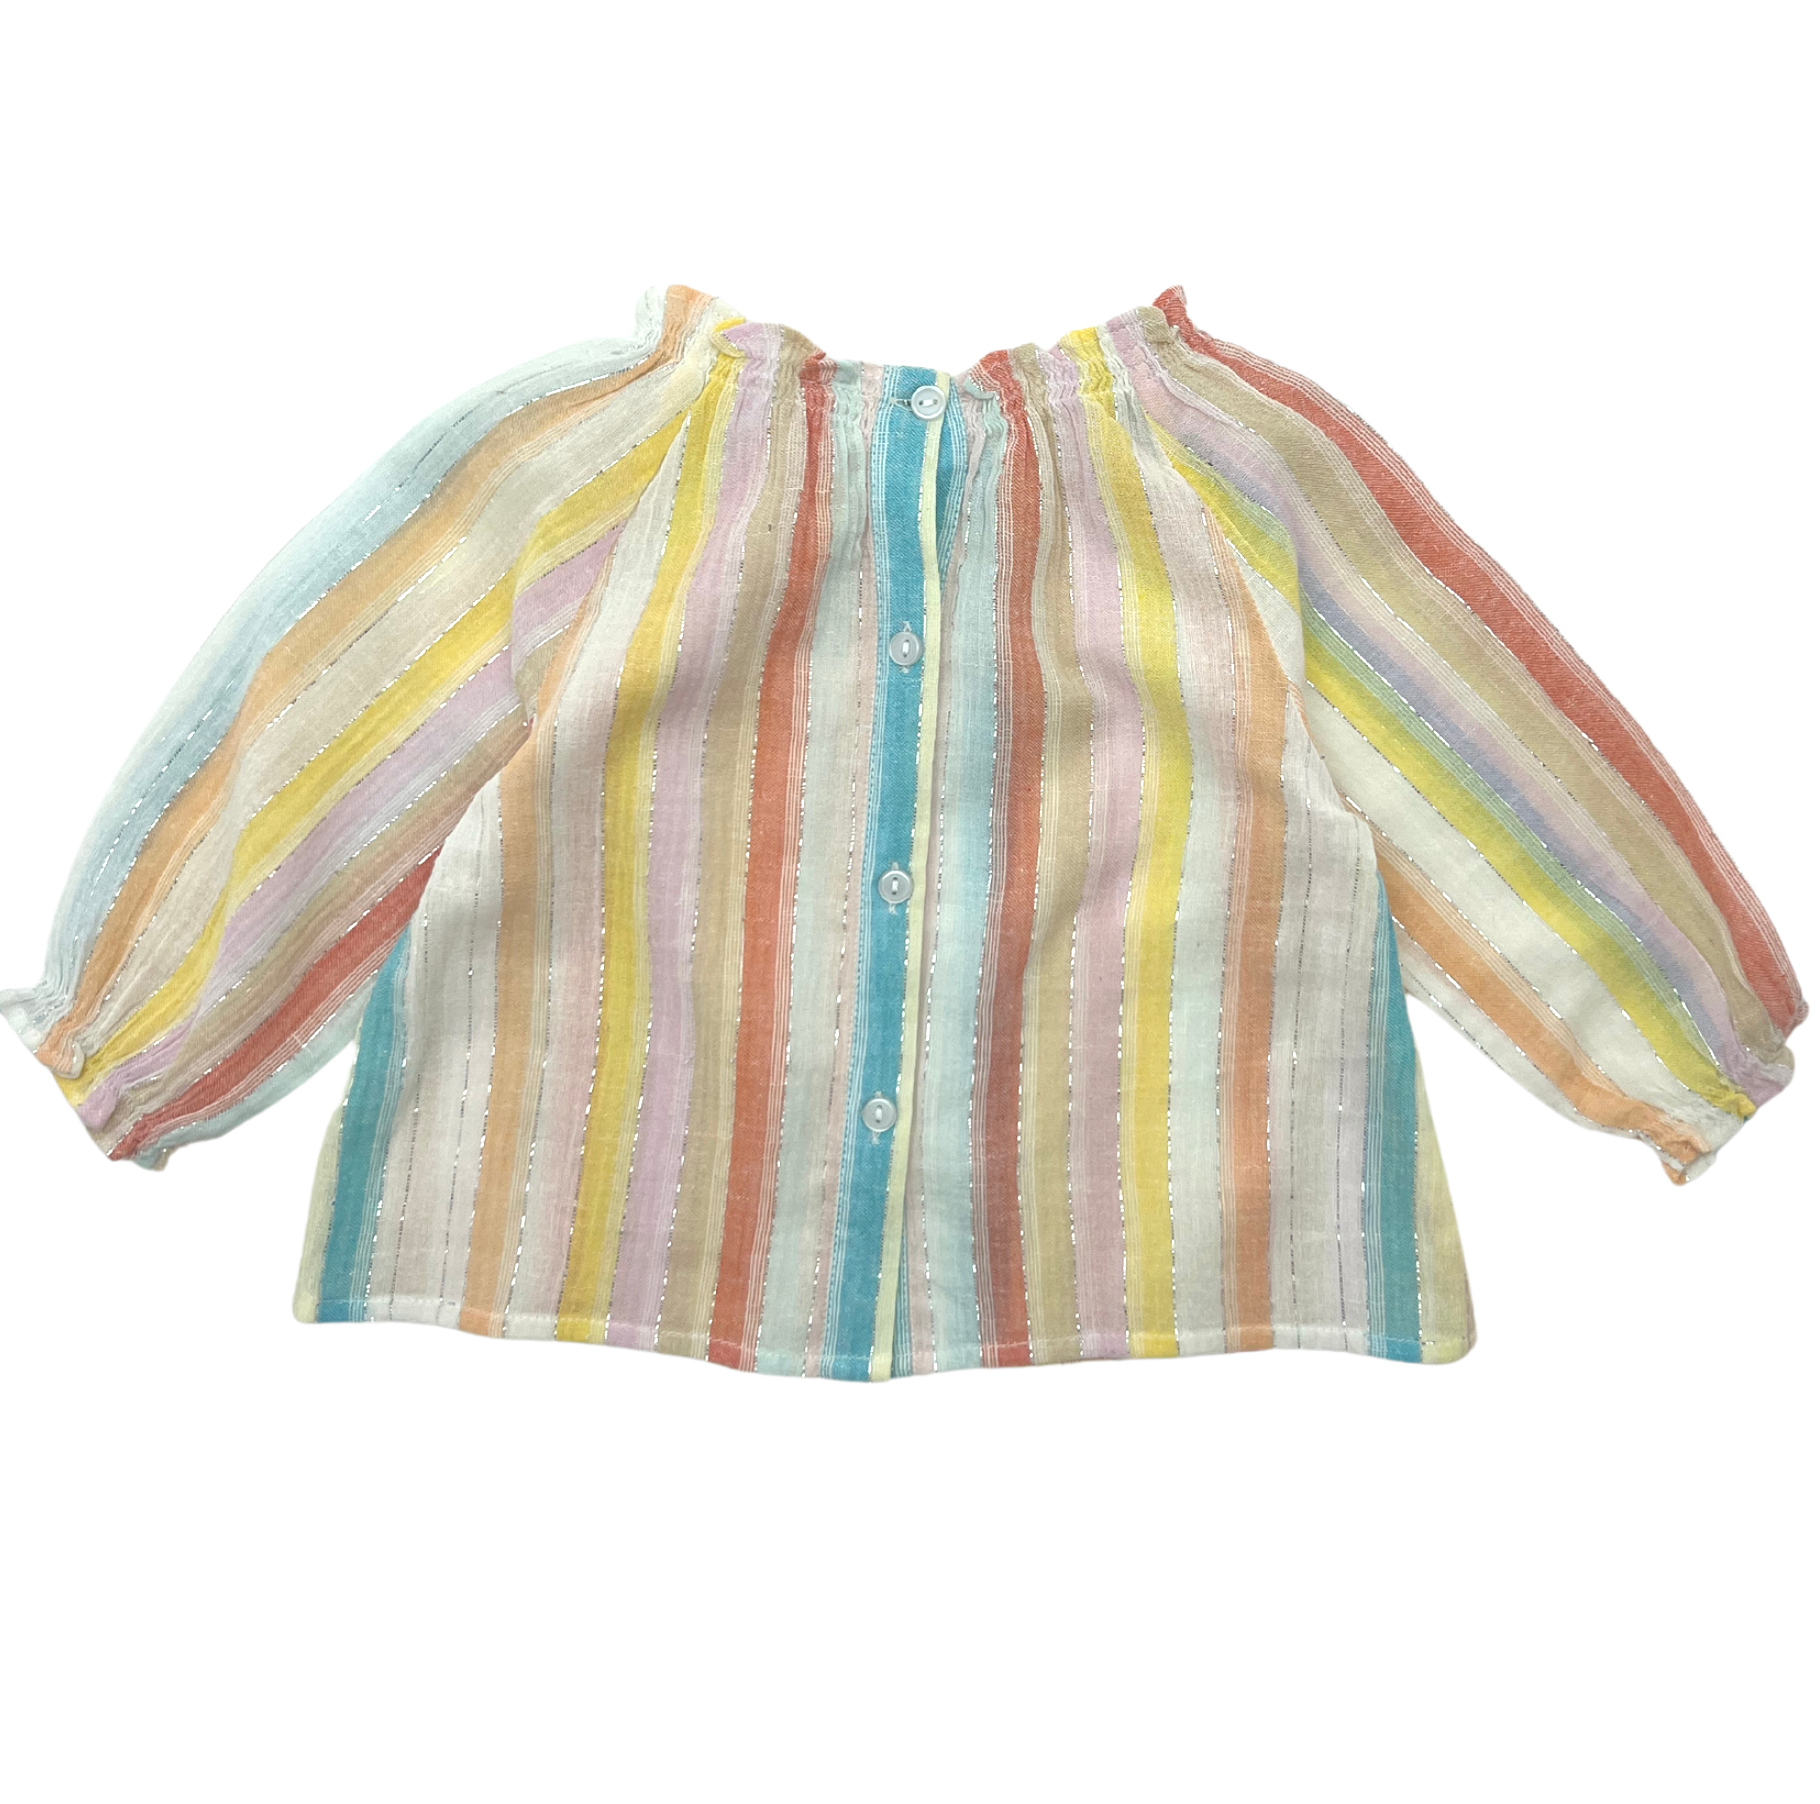 BONTON - Multicolored blouse - 6 months